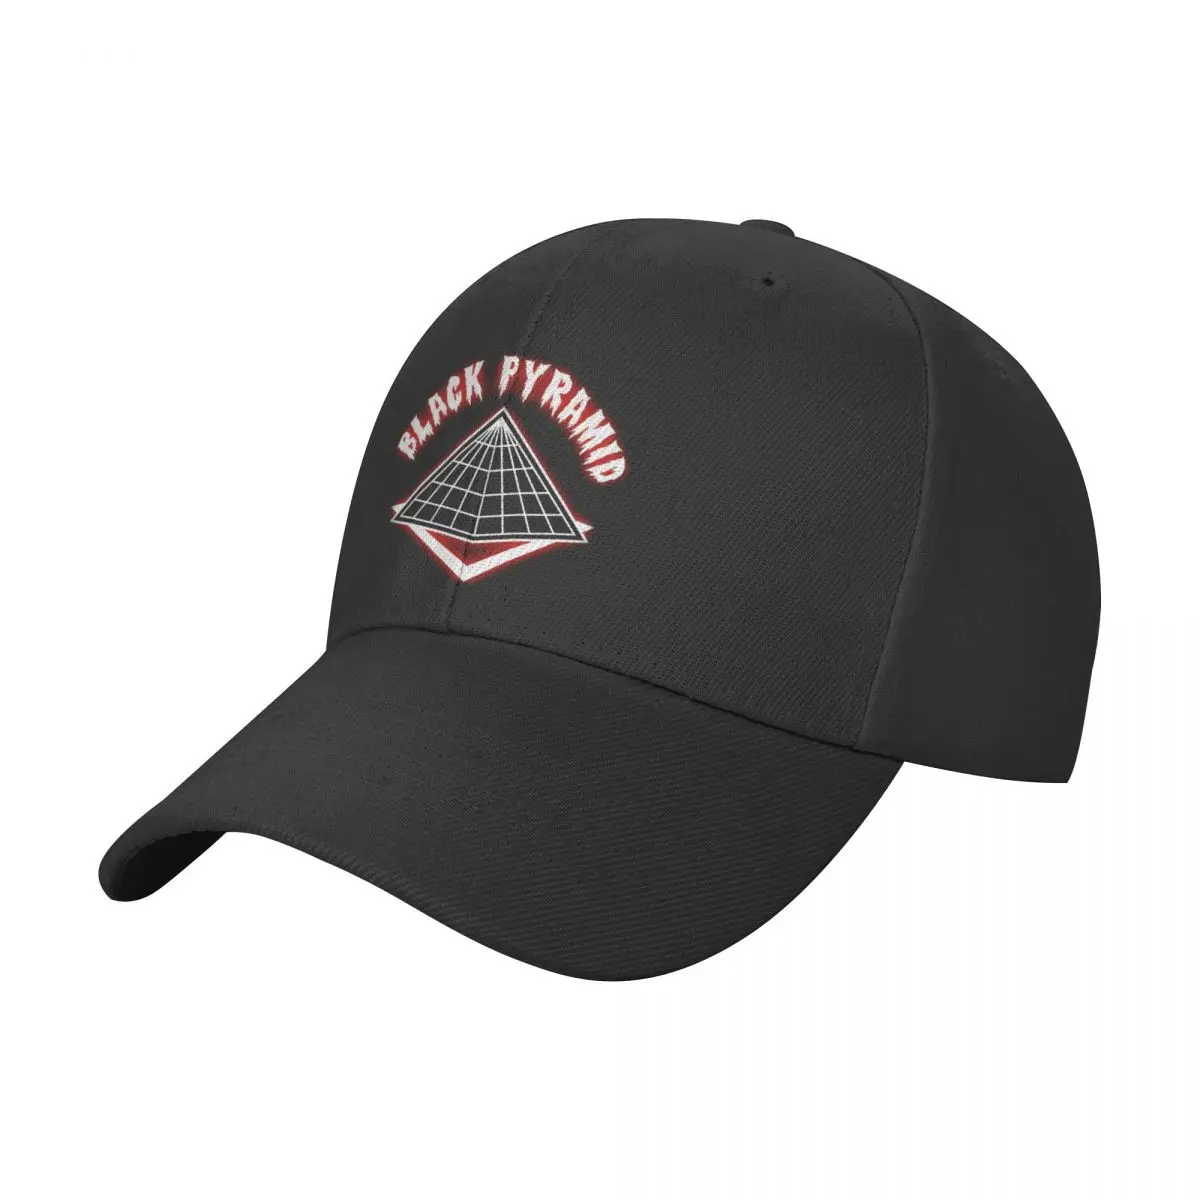 

Black Pyramid Men's Classic Baseball Cap Adjustable Buckle Closure Dad Hat Sports Golf Cap